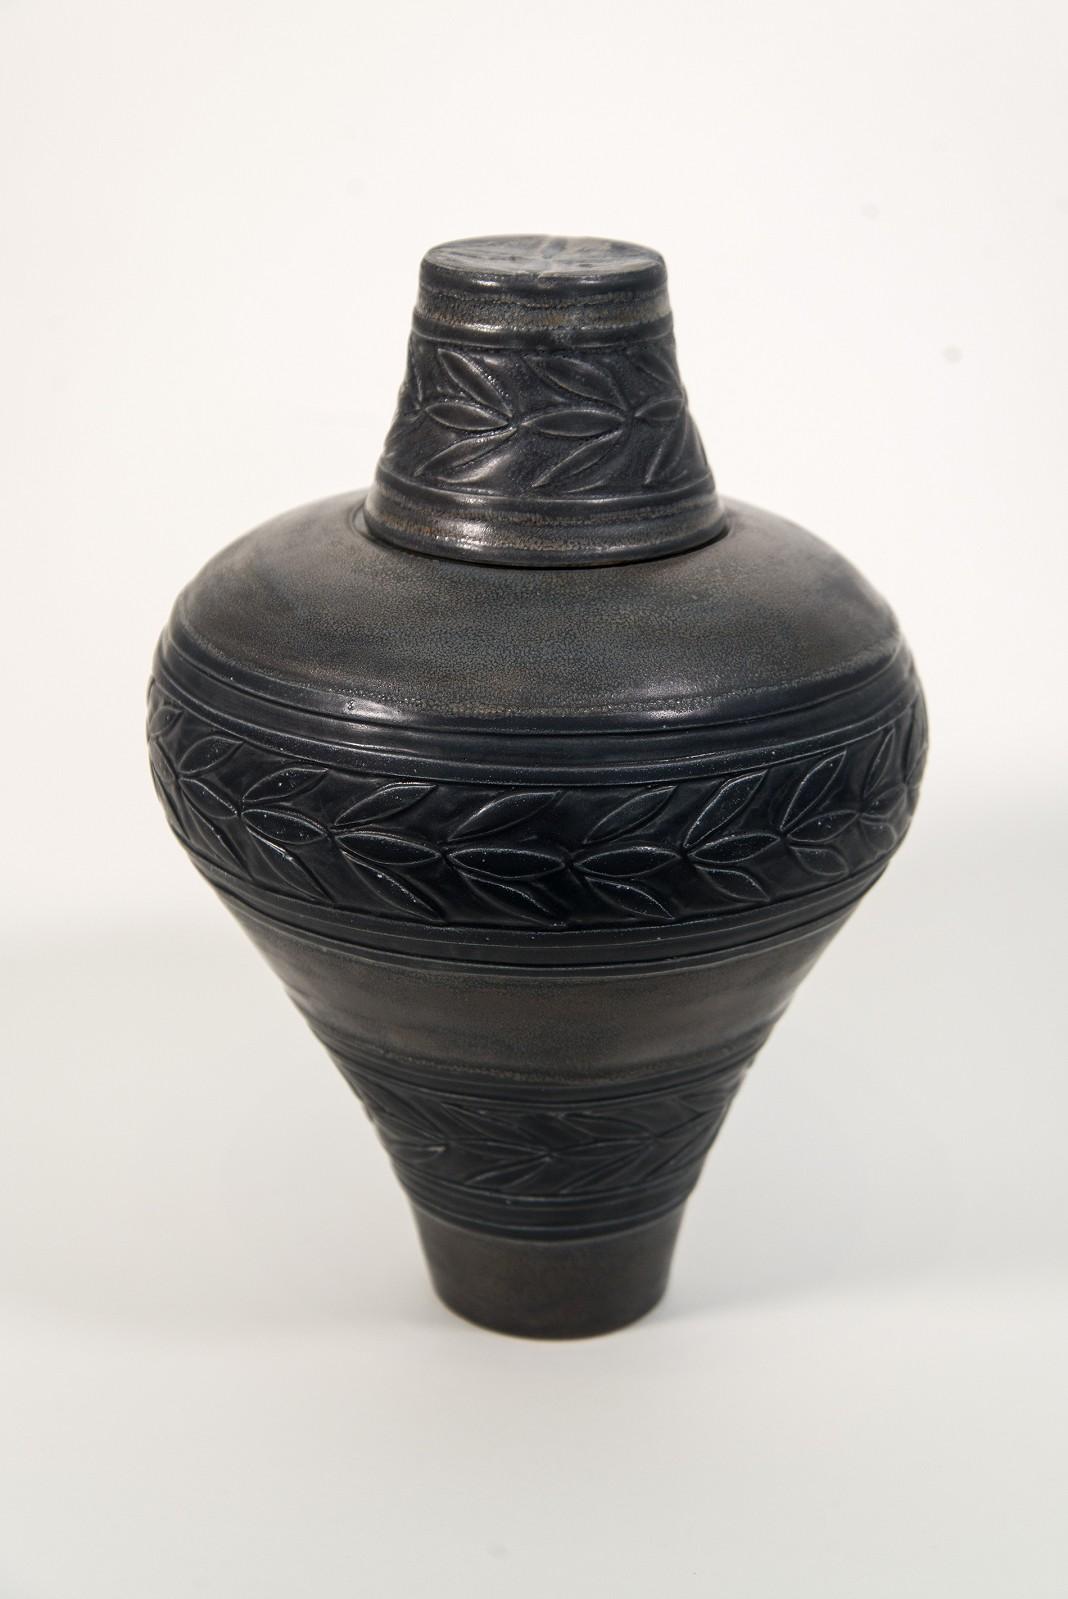 Small Black & Umber Ginger Jar with Engraved Leaves - porcelain vessel - Sculpture by Loren Kaplan